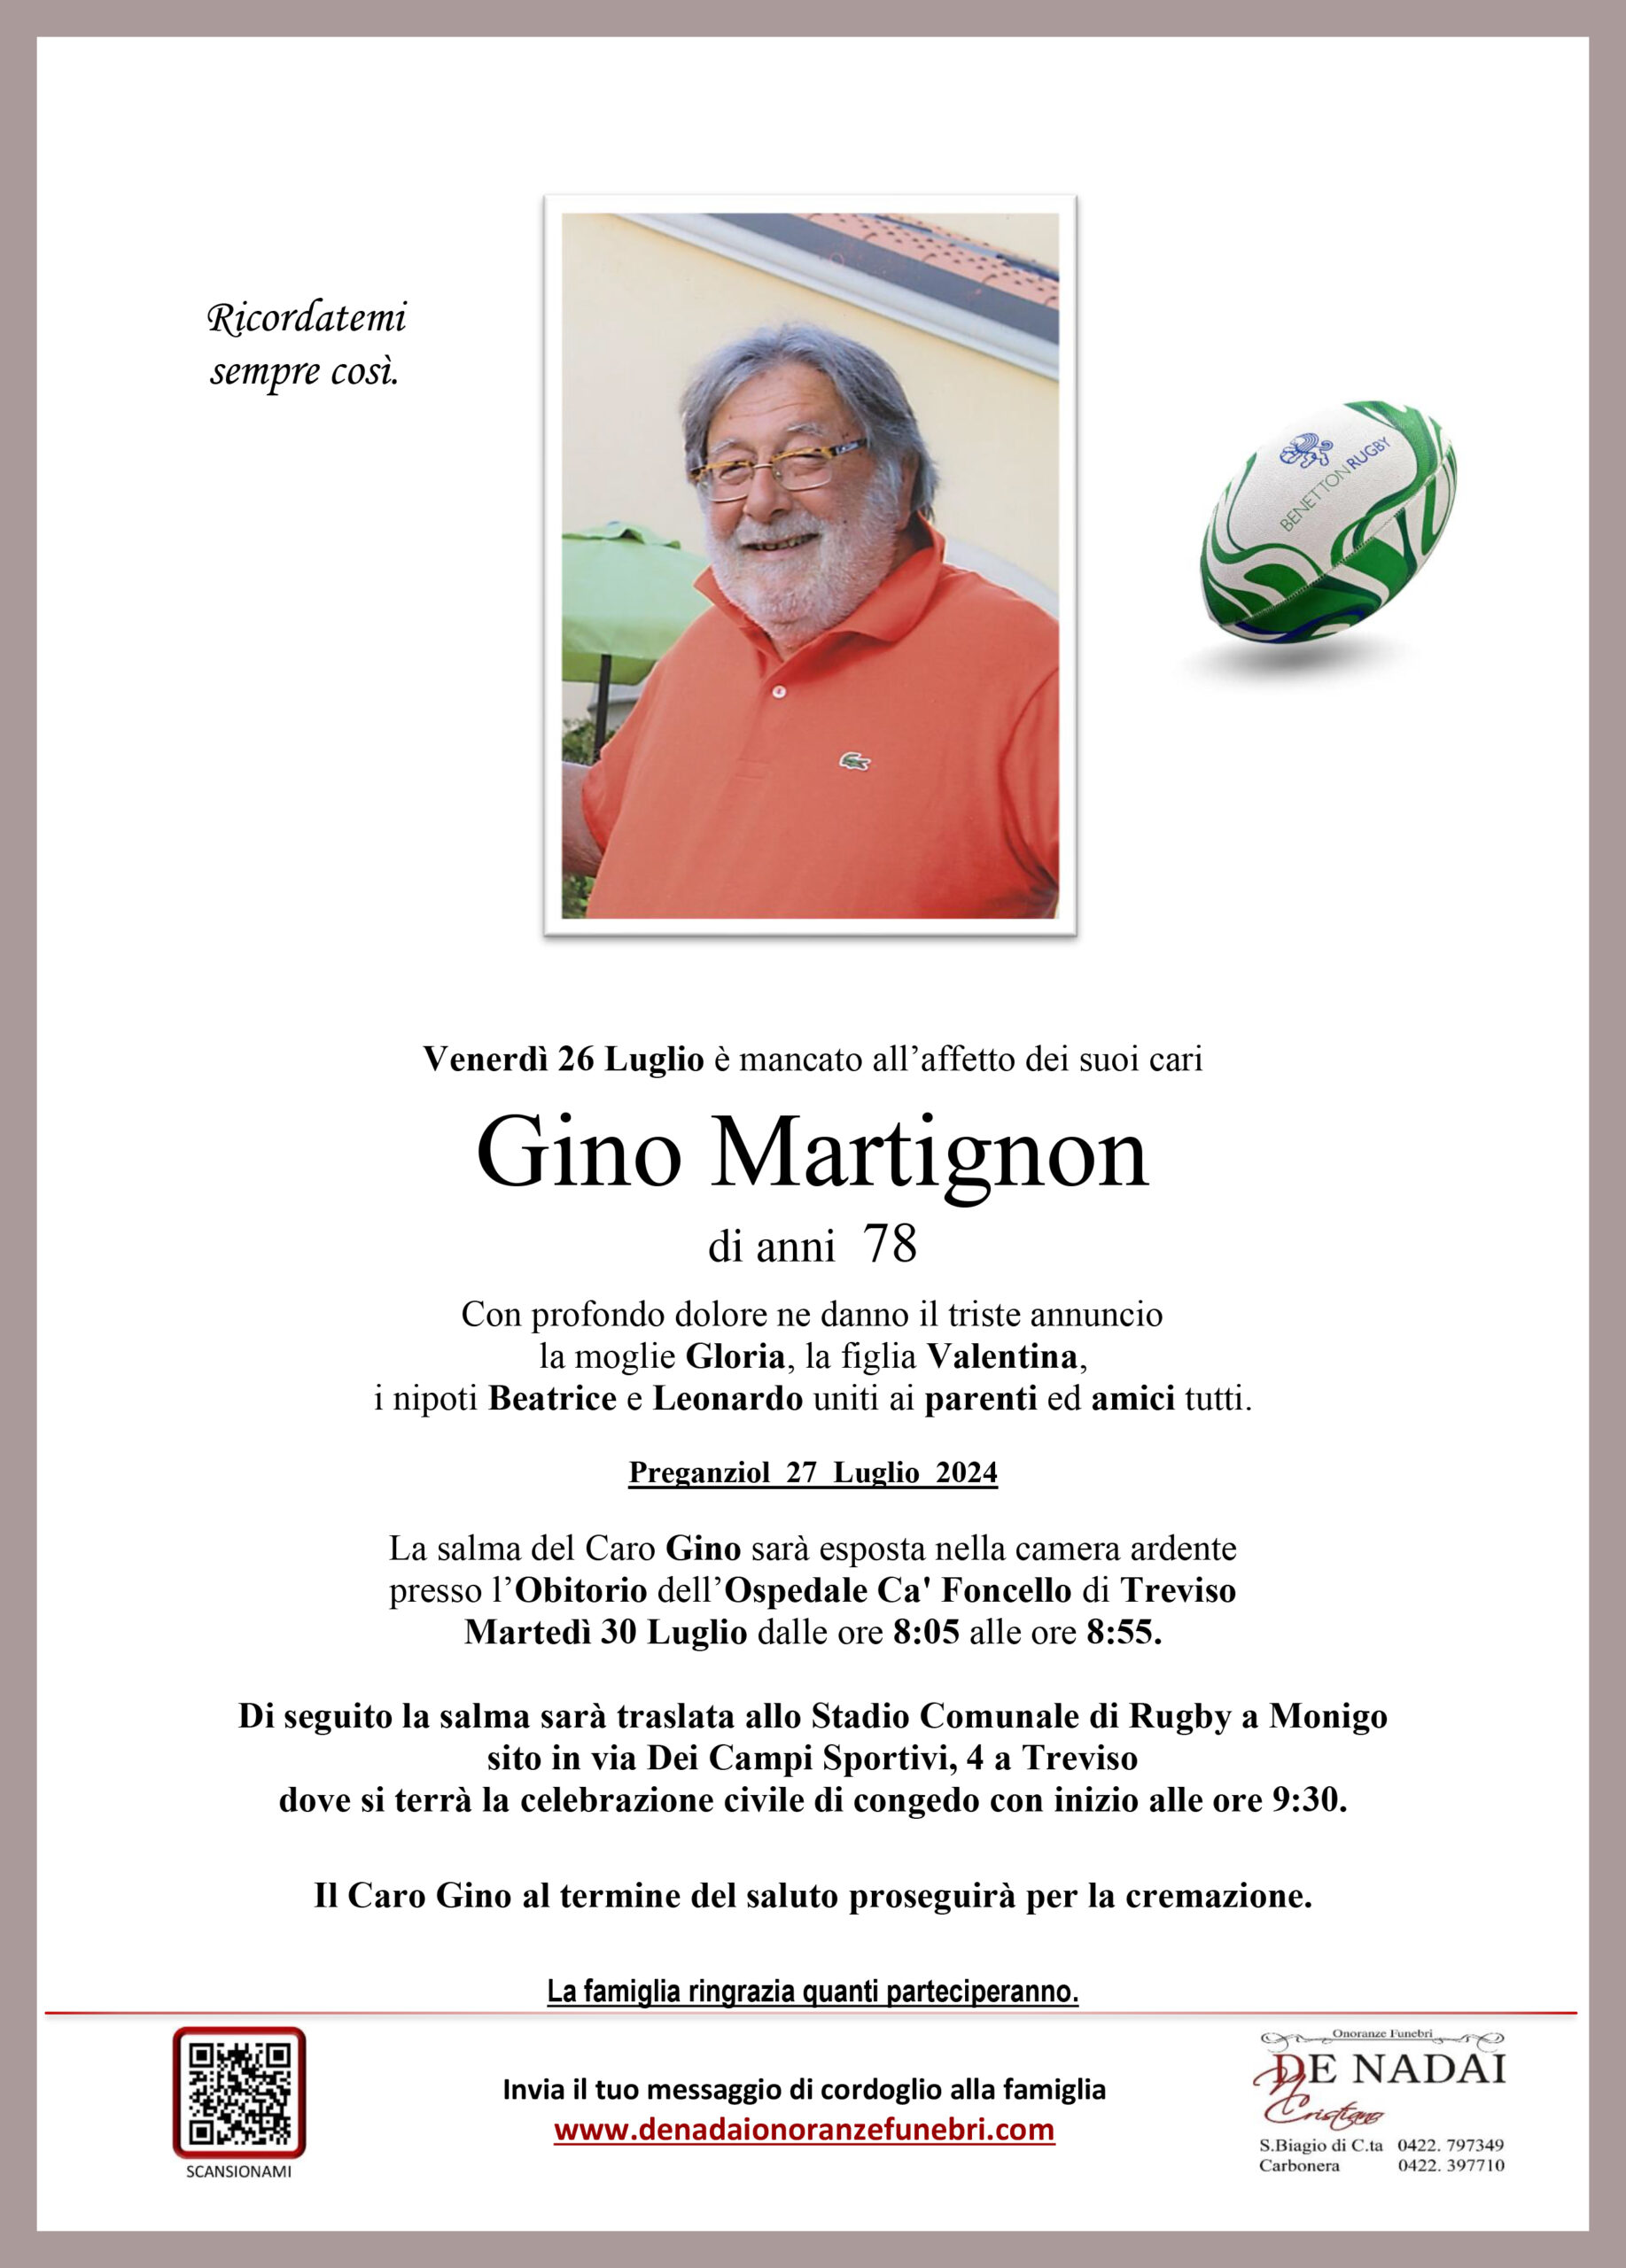 Martignon Gino